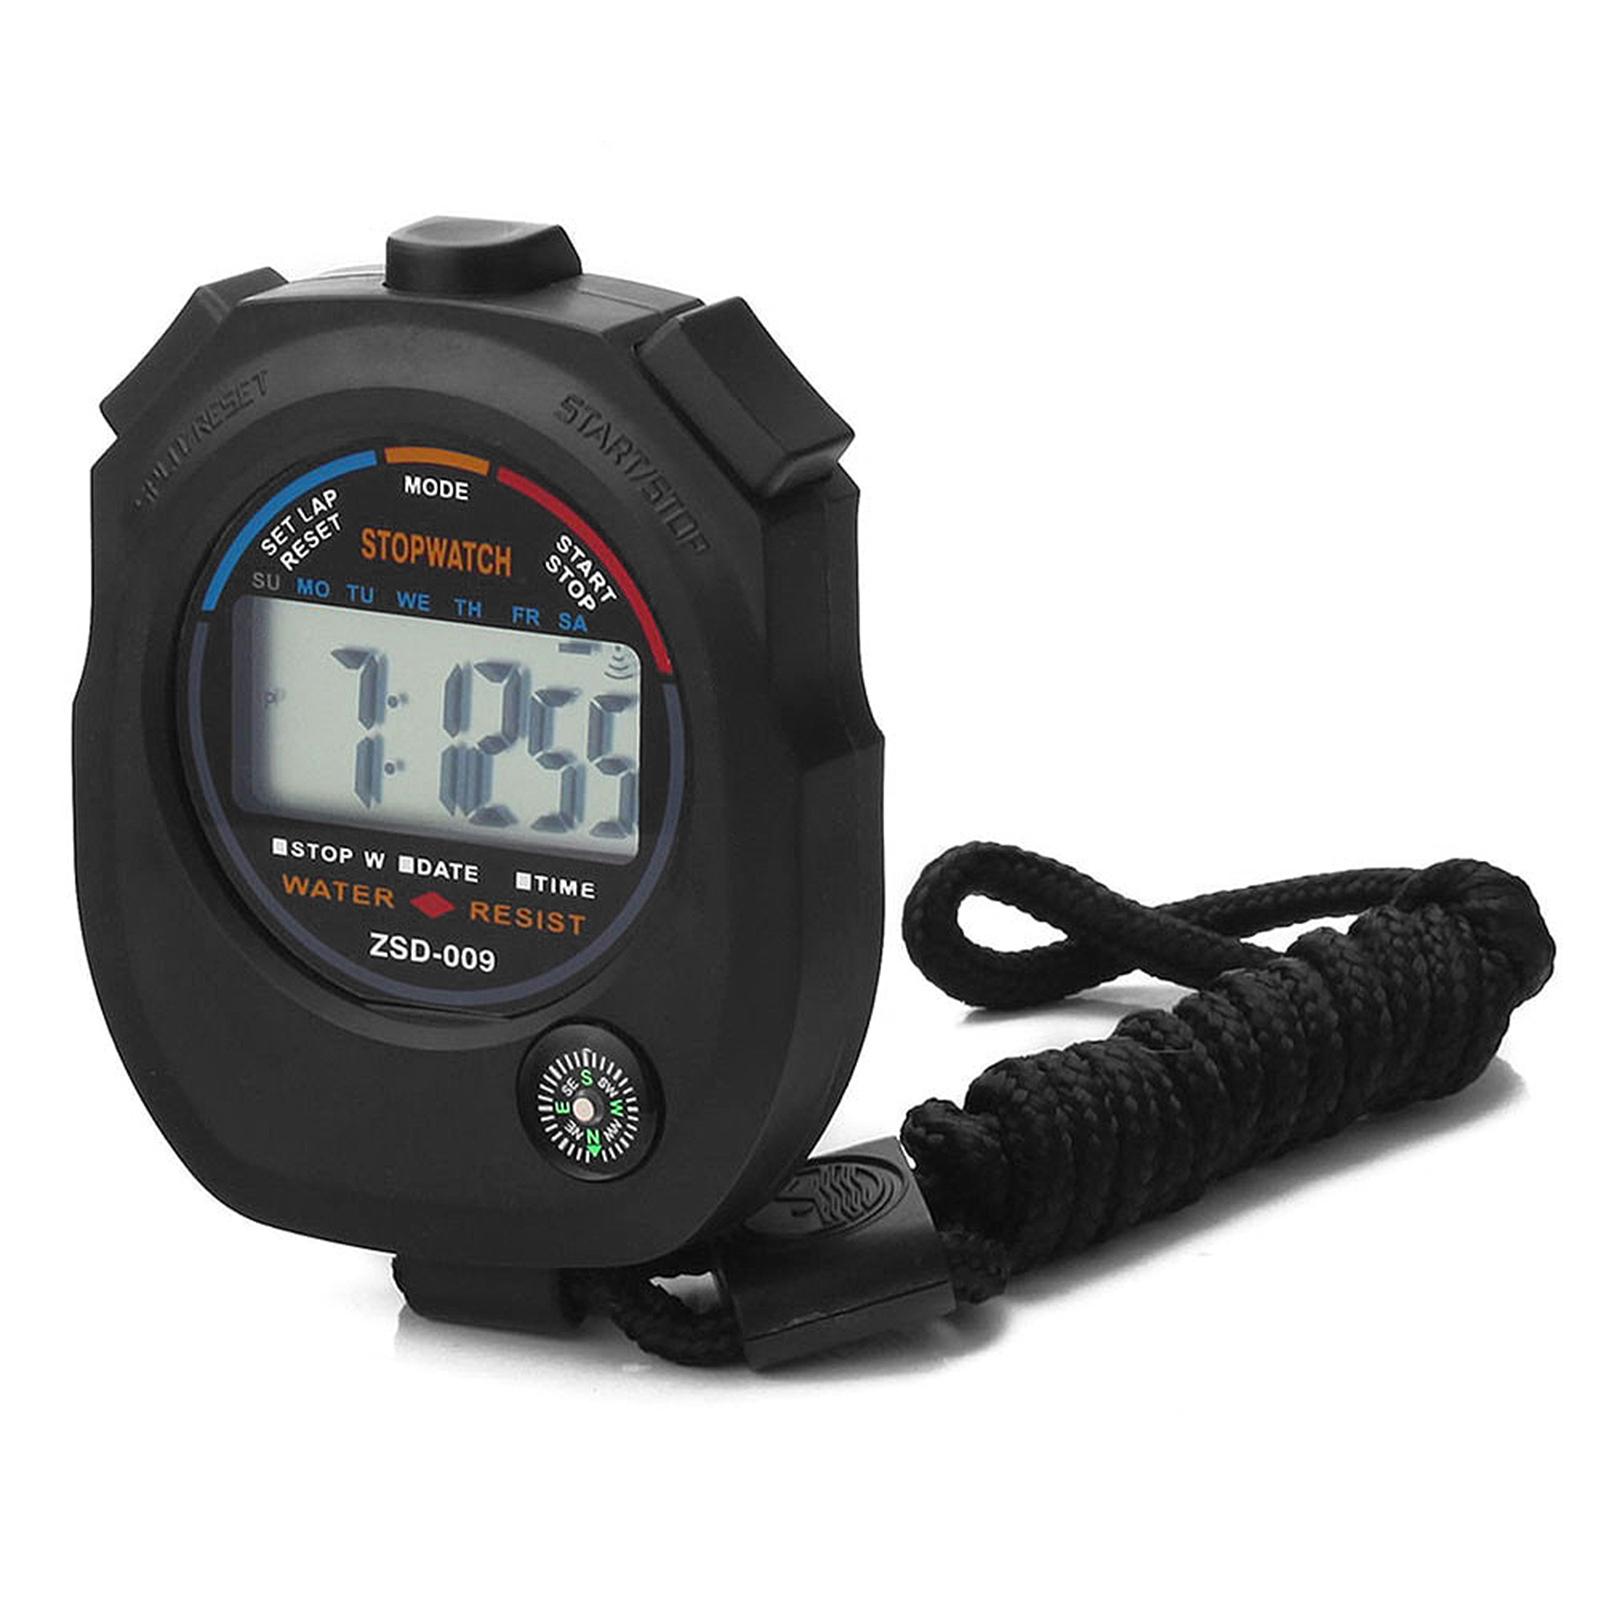 Đồng hồ bấm giờ thể thao kỹ thuật số điện tử ZSD009 với la bàn báo động thời gian cho các trọng tài huấn luyện viên thể dục thể thao ngoài trời